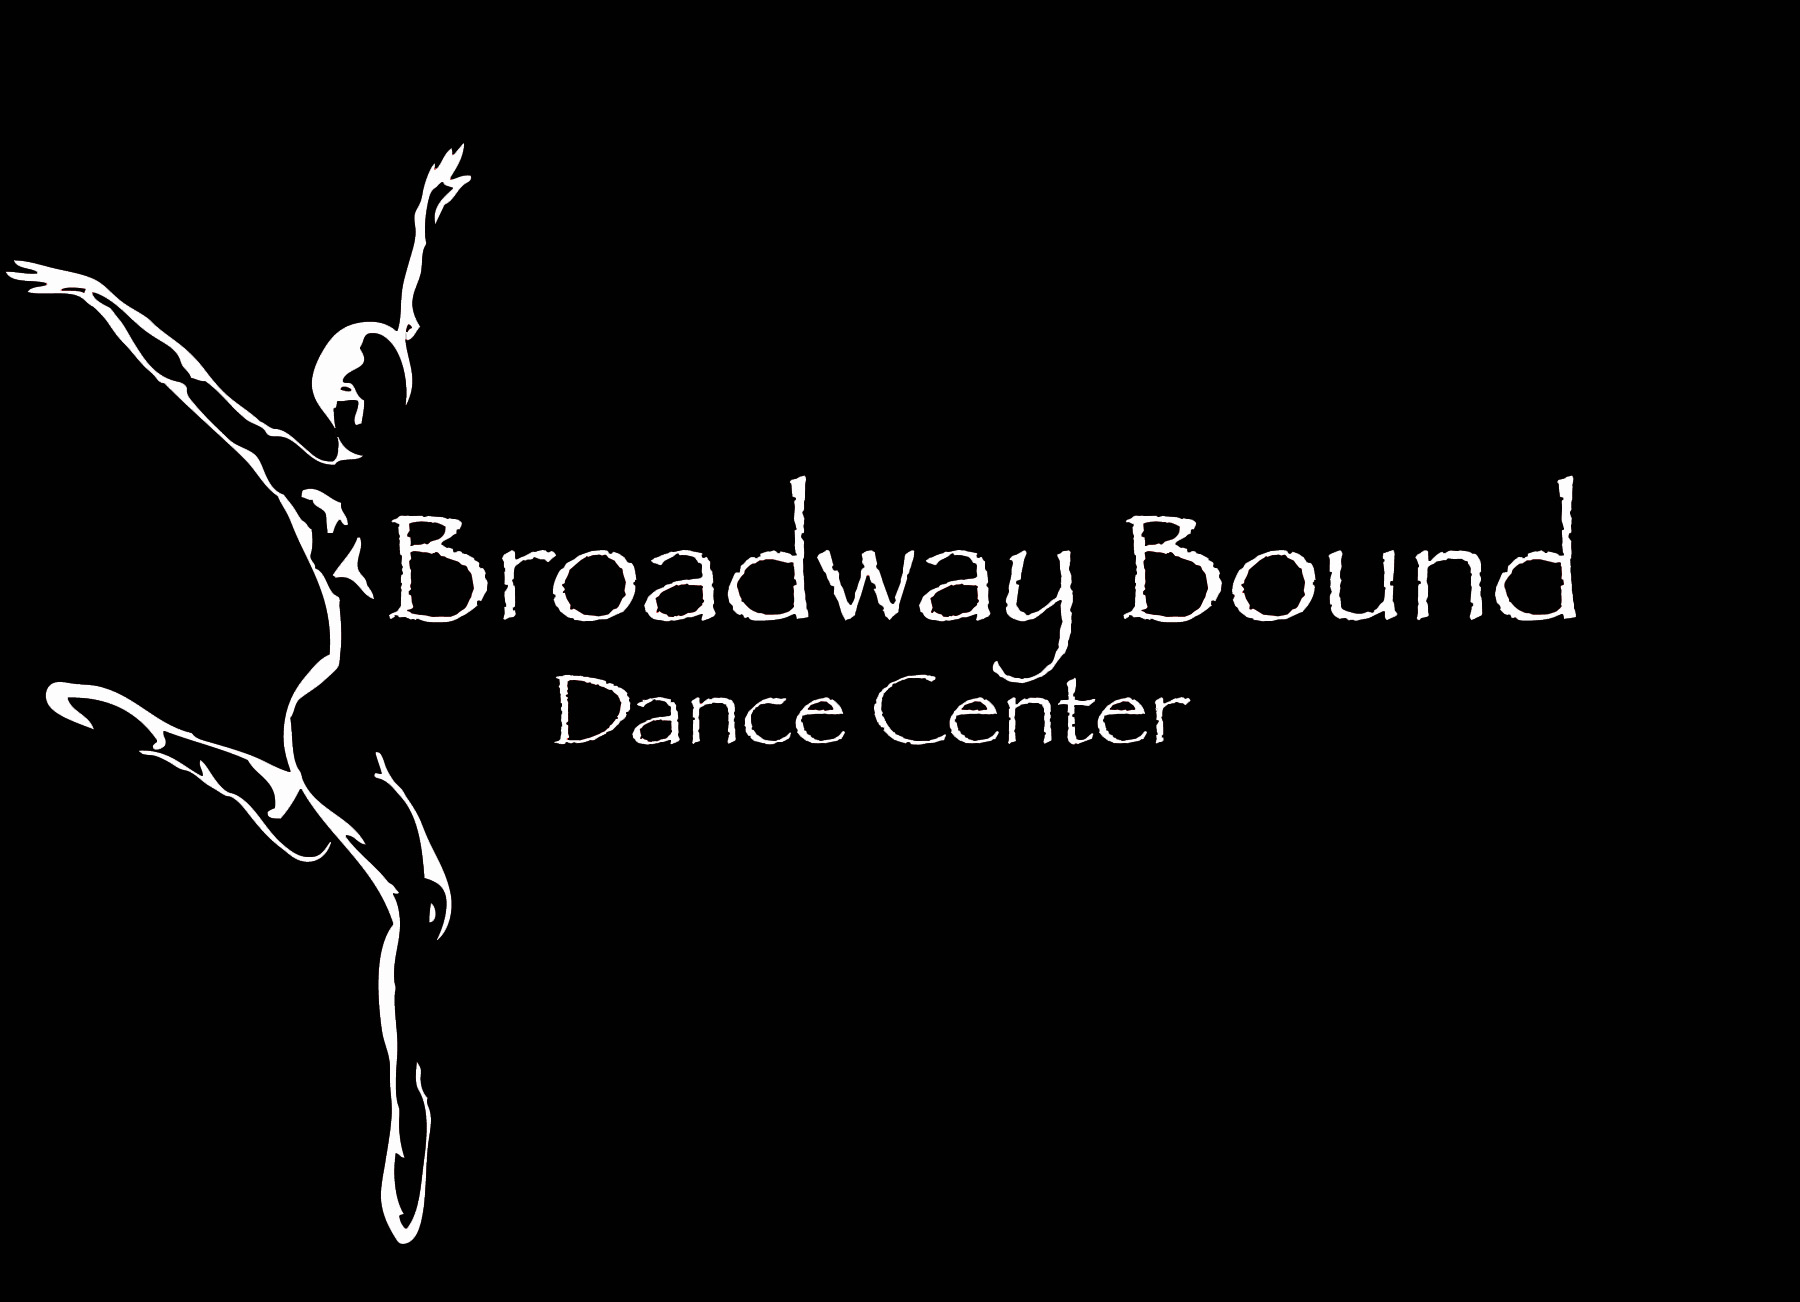 Broadway Bound Dance Center Dancers